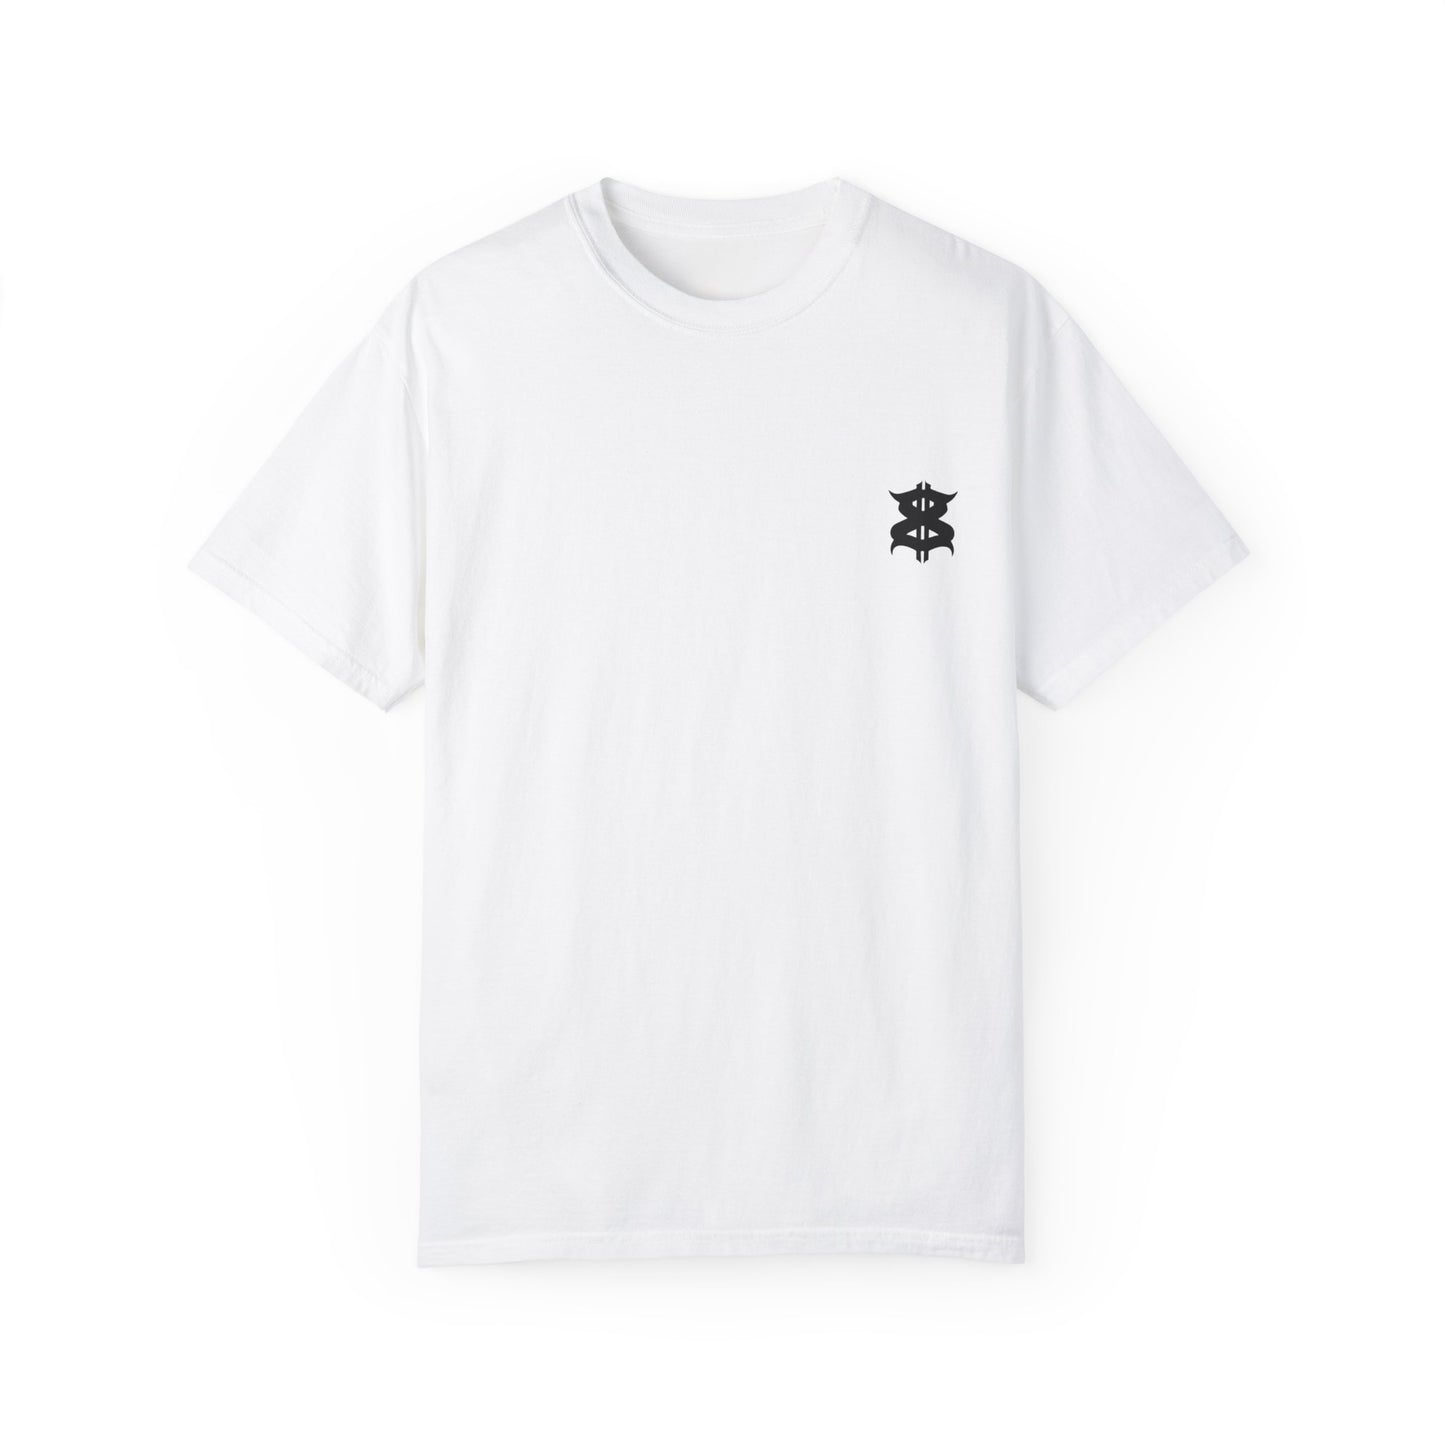 ANGEL Harderground - Unisex Garment-Dyed T-shirt - front & back logo